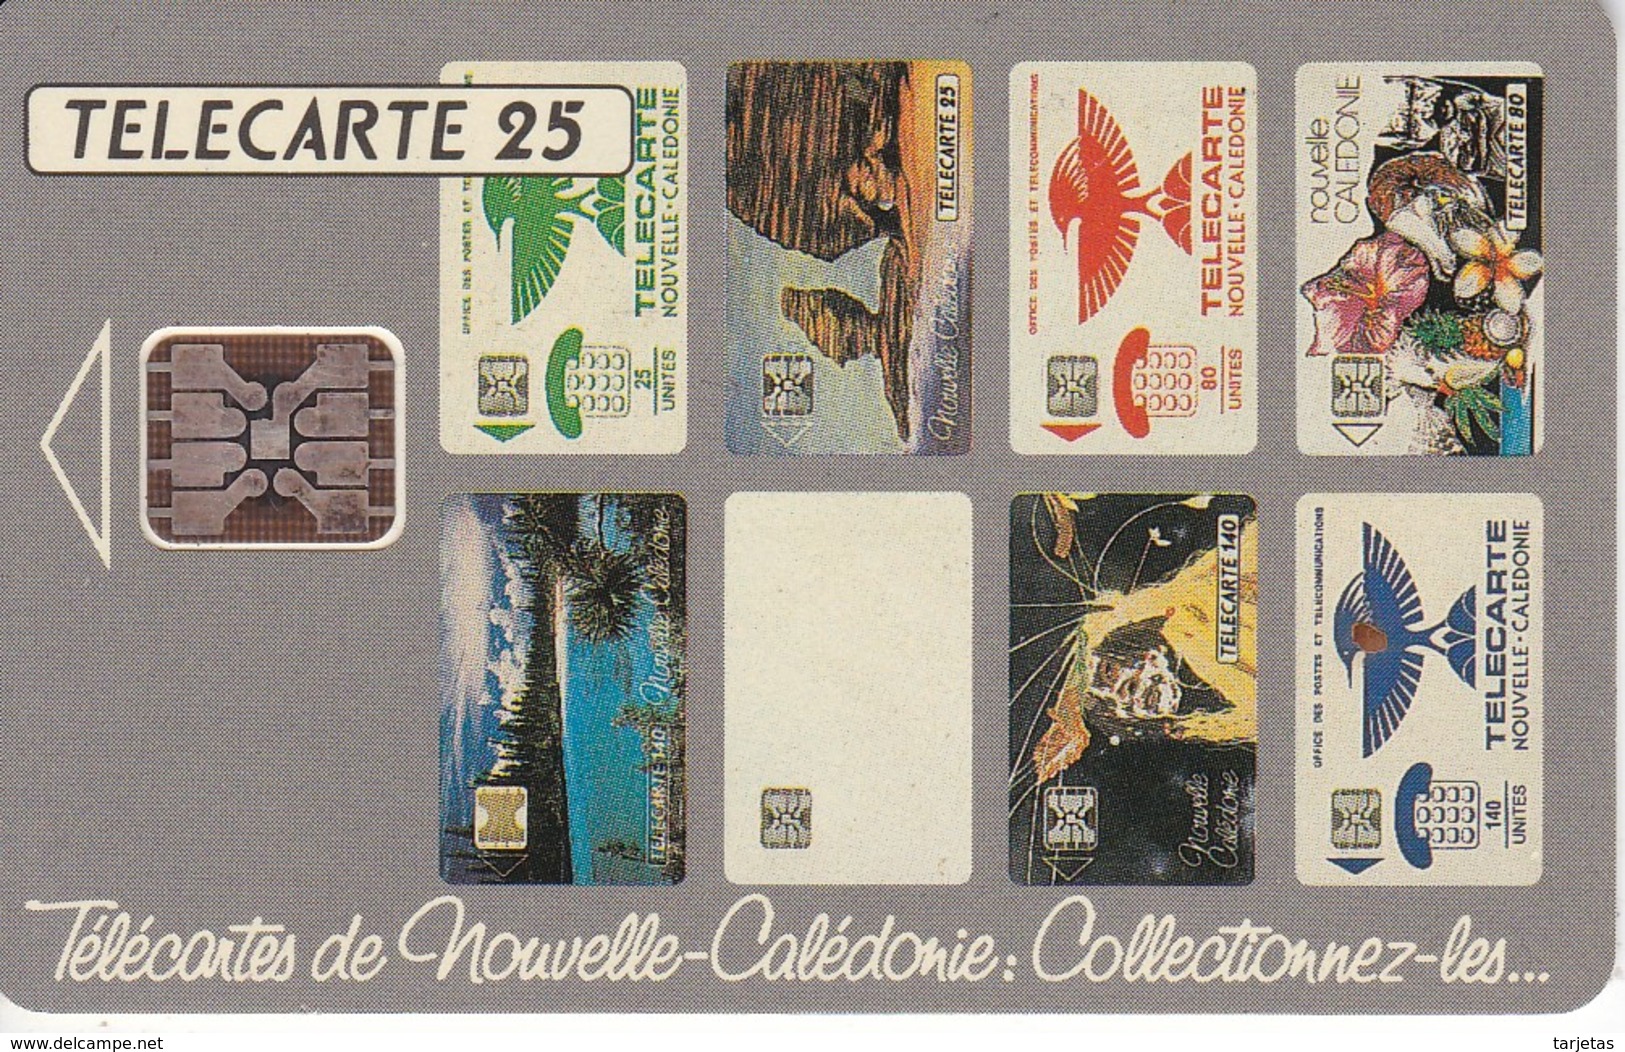 TARJETA DE NUEVA CALEDONIA DE 25 UNITES DE TELECARTES  TIRADA 75000 DEL 11/93 - Nueva Caledonia